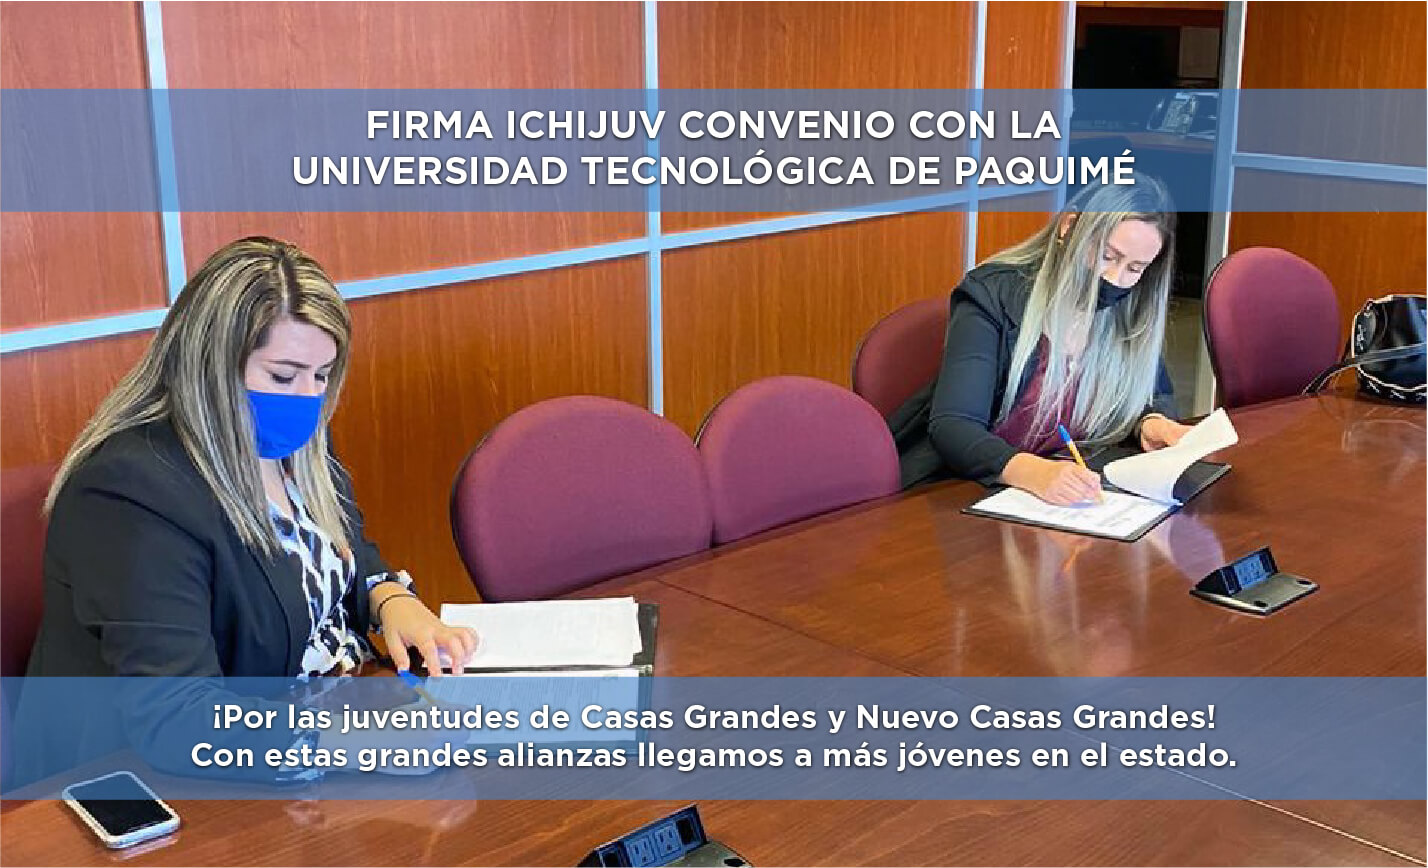 Firma ICHIJUV Convenio con la Universidad Tecnológica de Paquimé